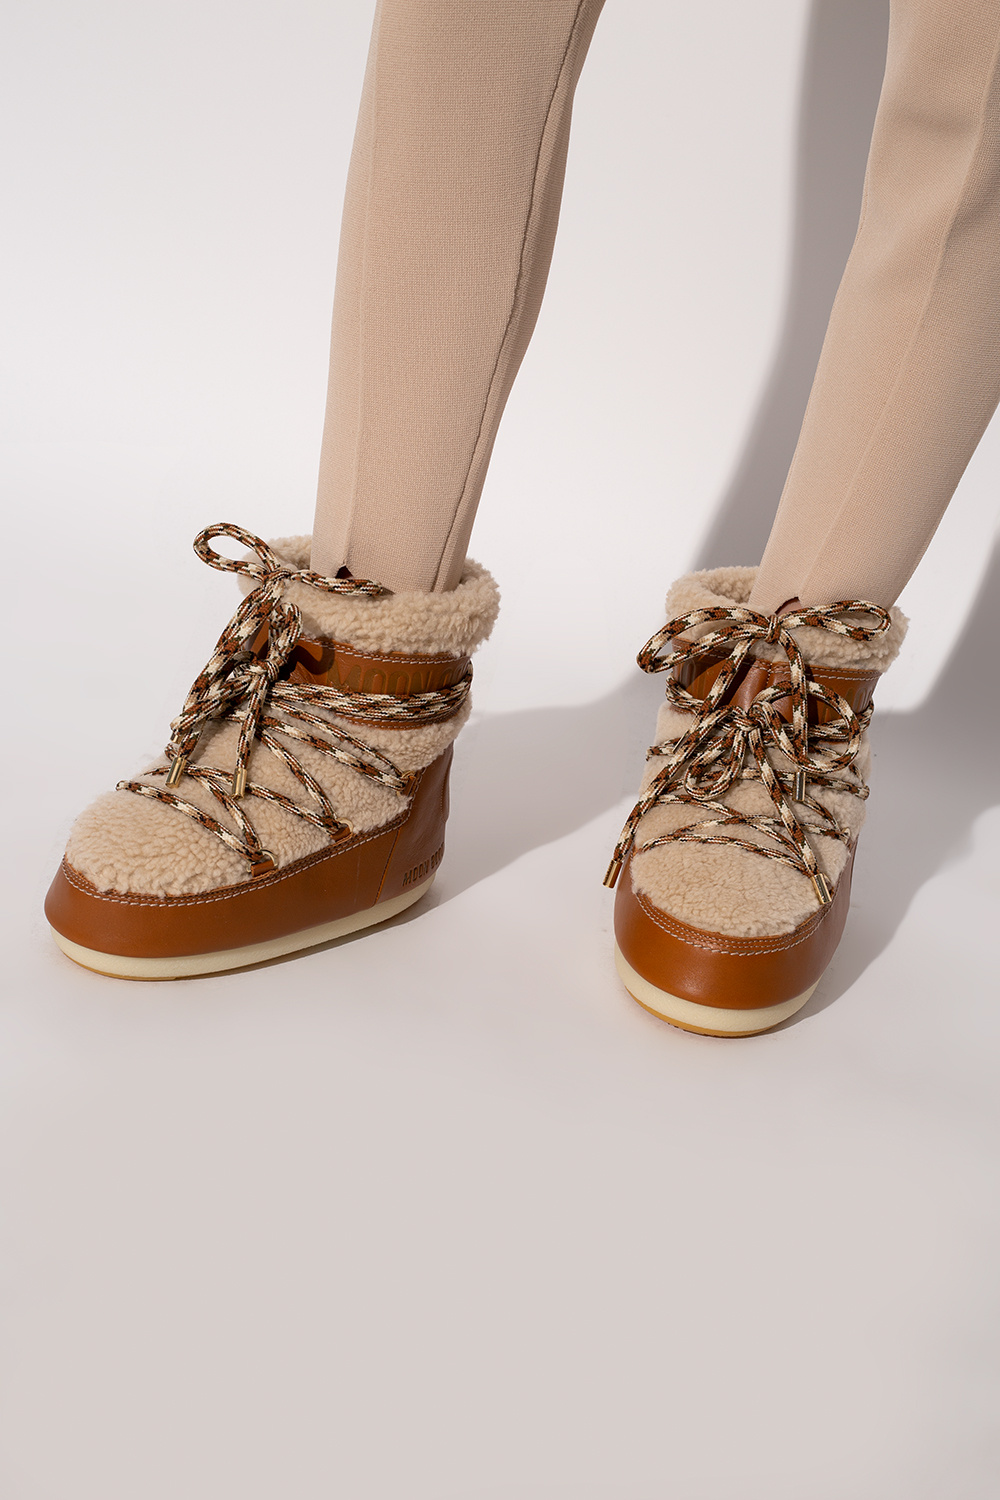 Chloé Chloé x Moon Boots | Women's Shoes | Vitkac